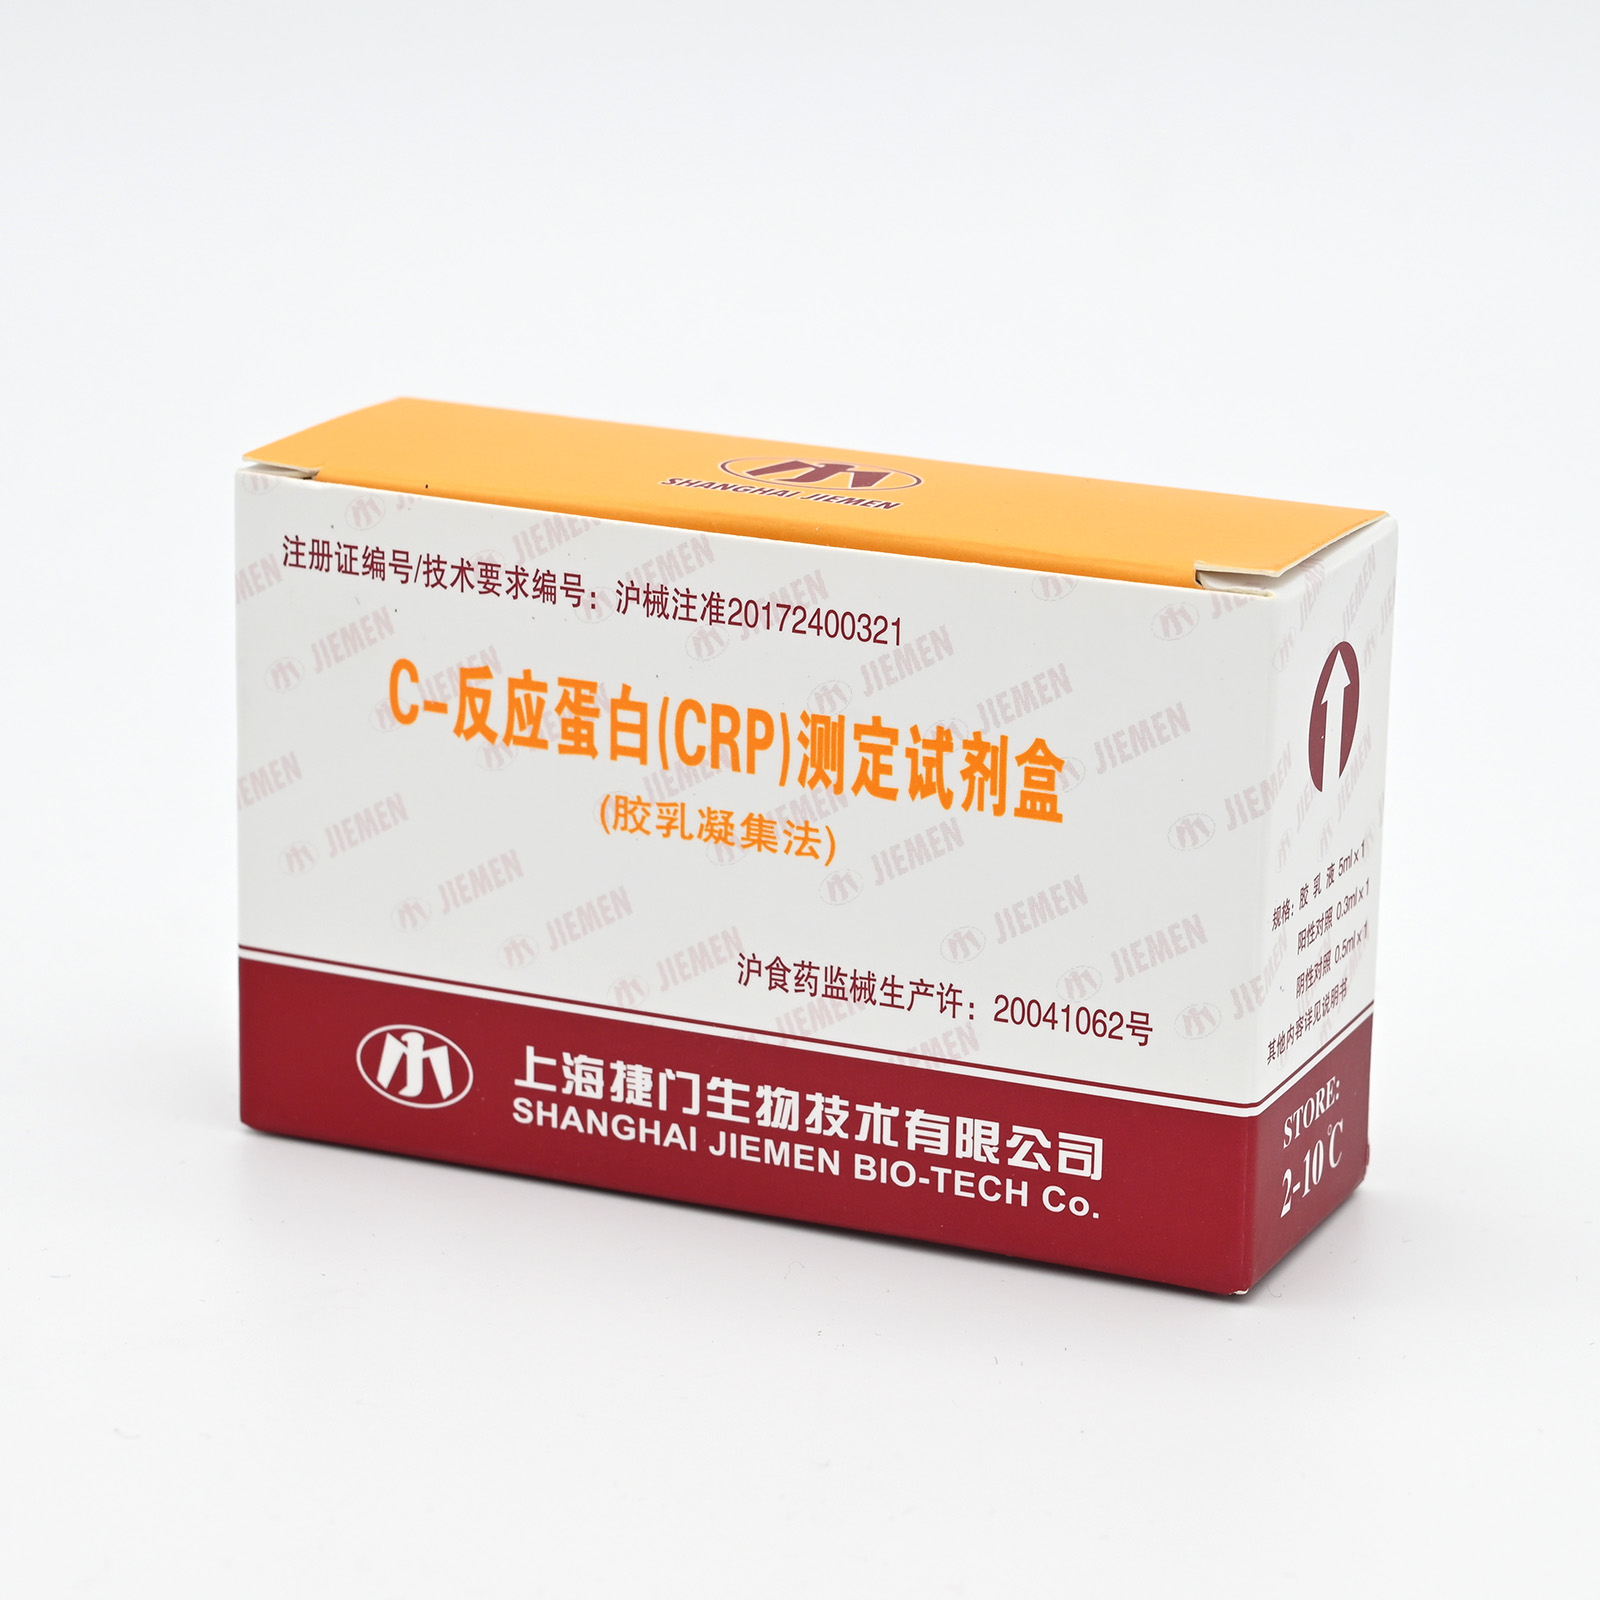 【捷门】C-反应蛋白(CRP)测定试剂盒(胶乳凝集法)